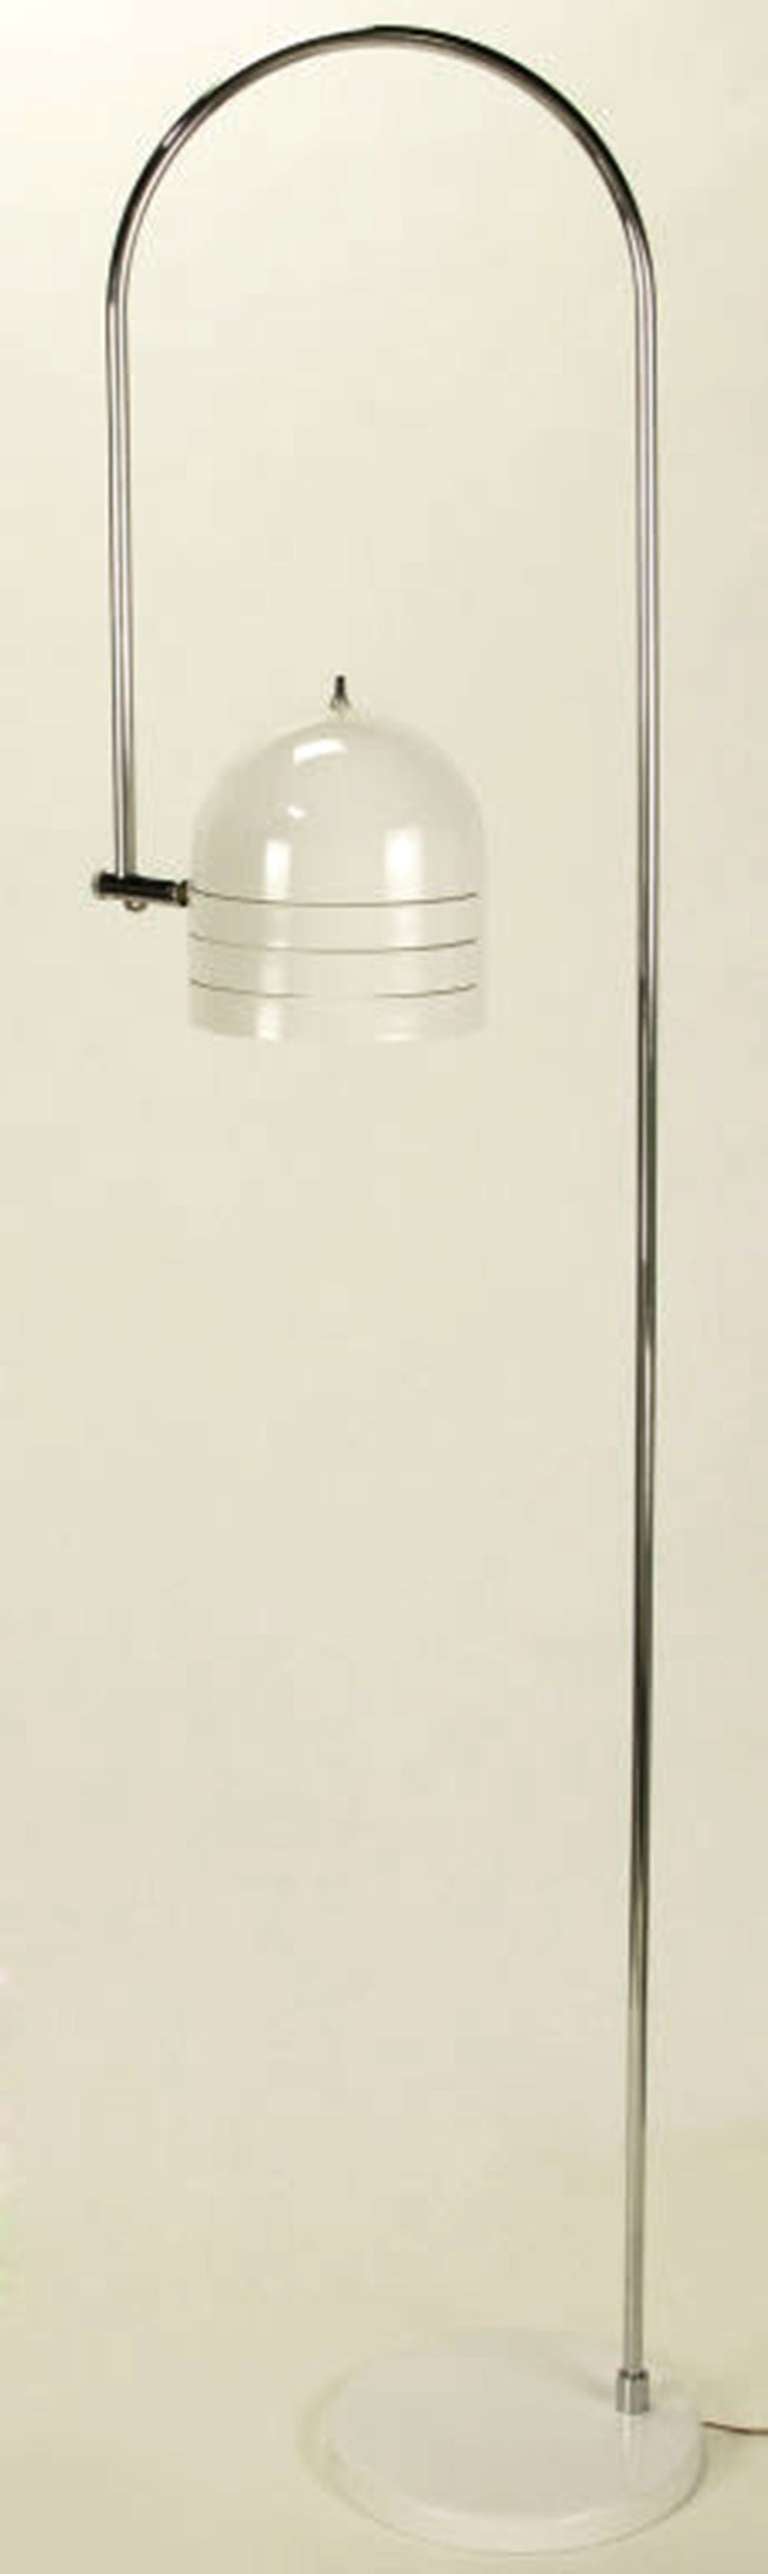 Lampadaire Raymor italien en chrome et métal émaillé blanc en arc de cercle Excellent état - En vente à Chicago, IL